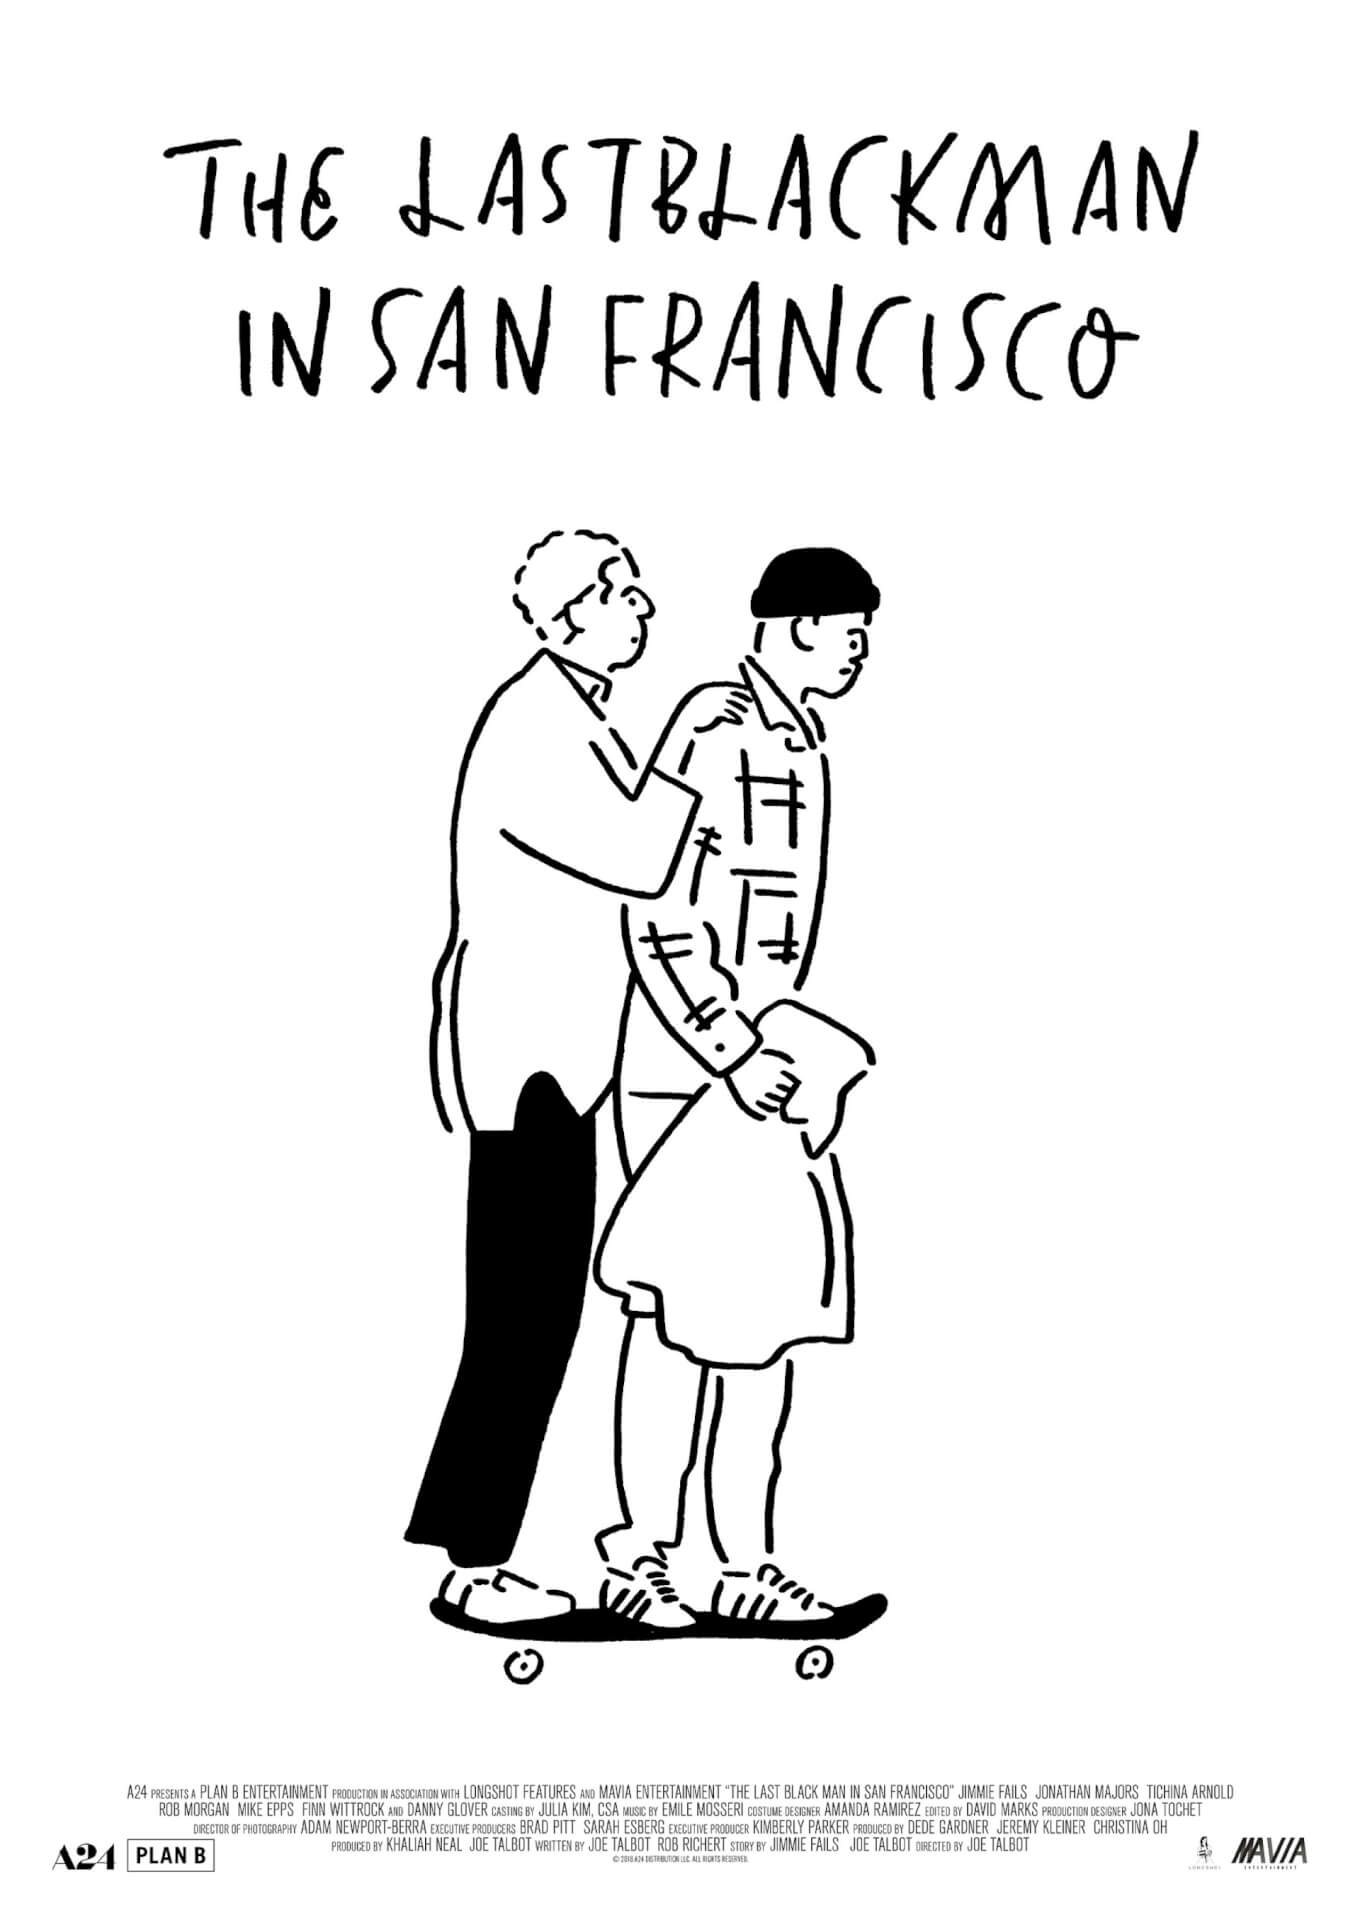 長場雄らが描き下ろし 4 プランb最新作 ラストブラックマン イン サンフランシスコ のアートポスターが解禁 プレゼント企画も開始 Qetic